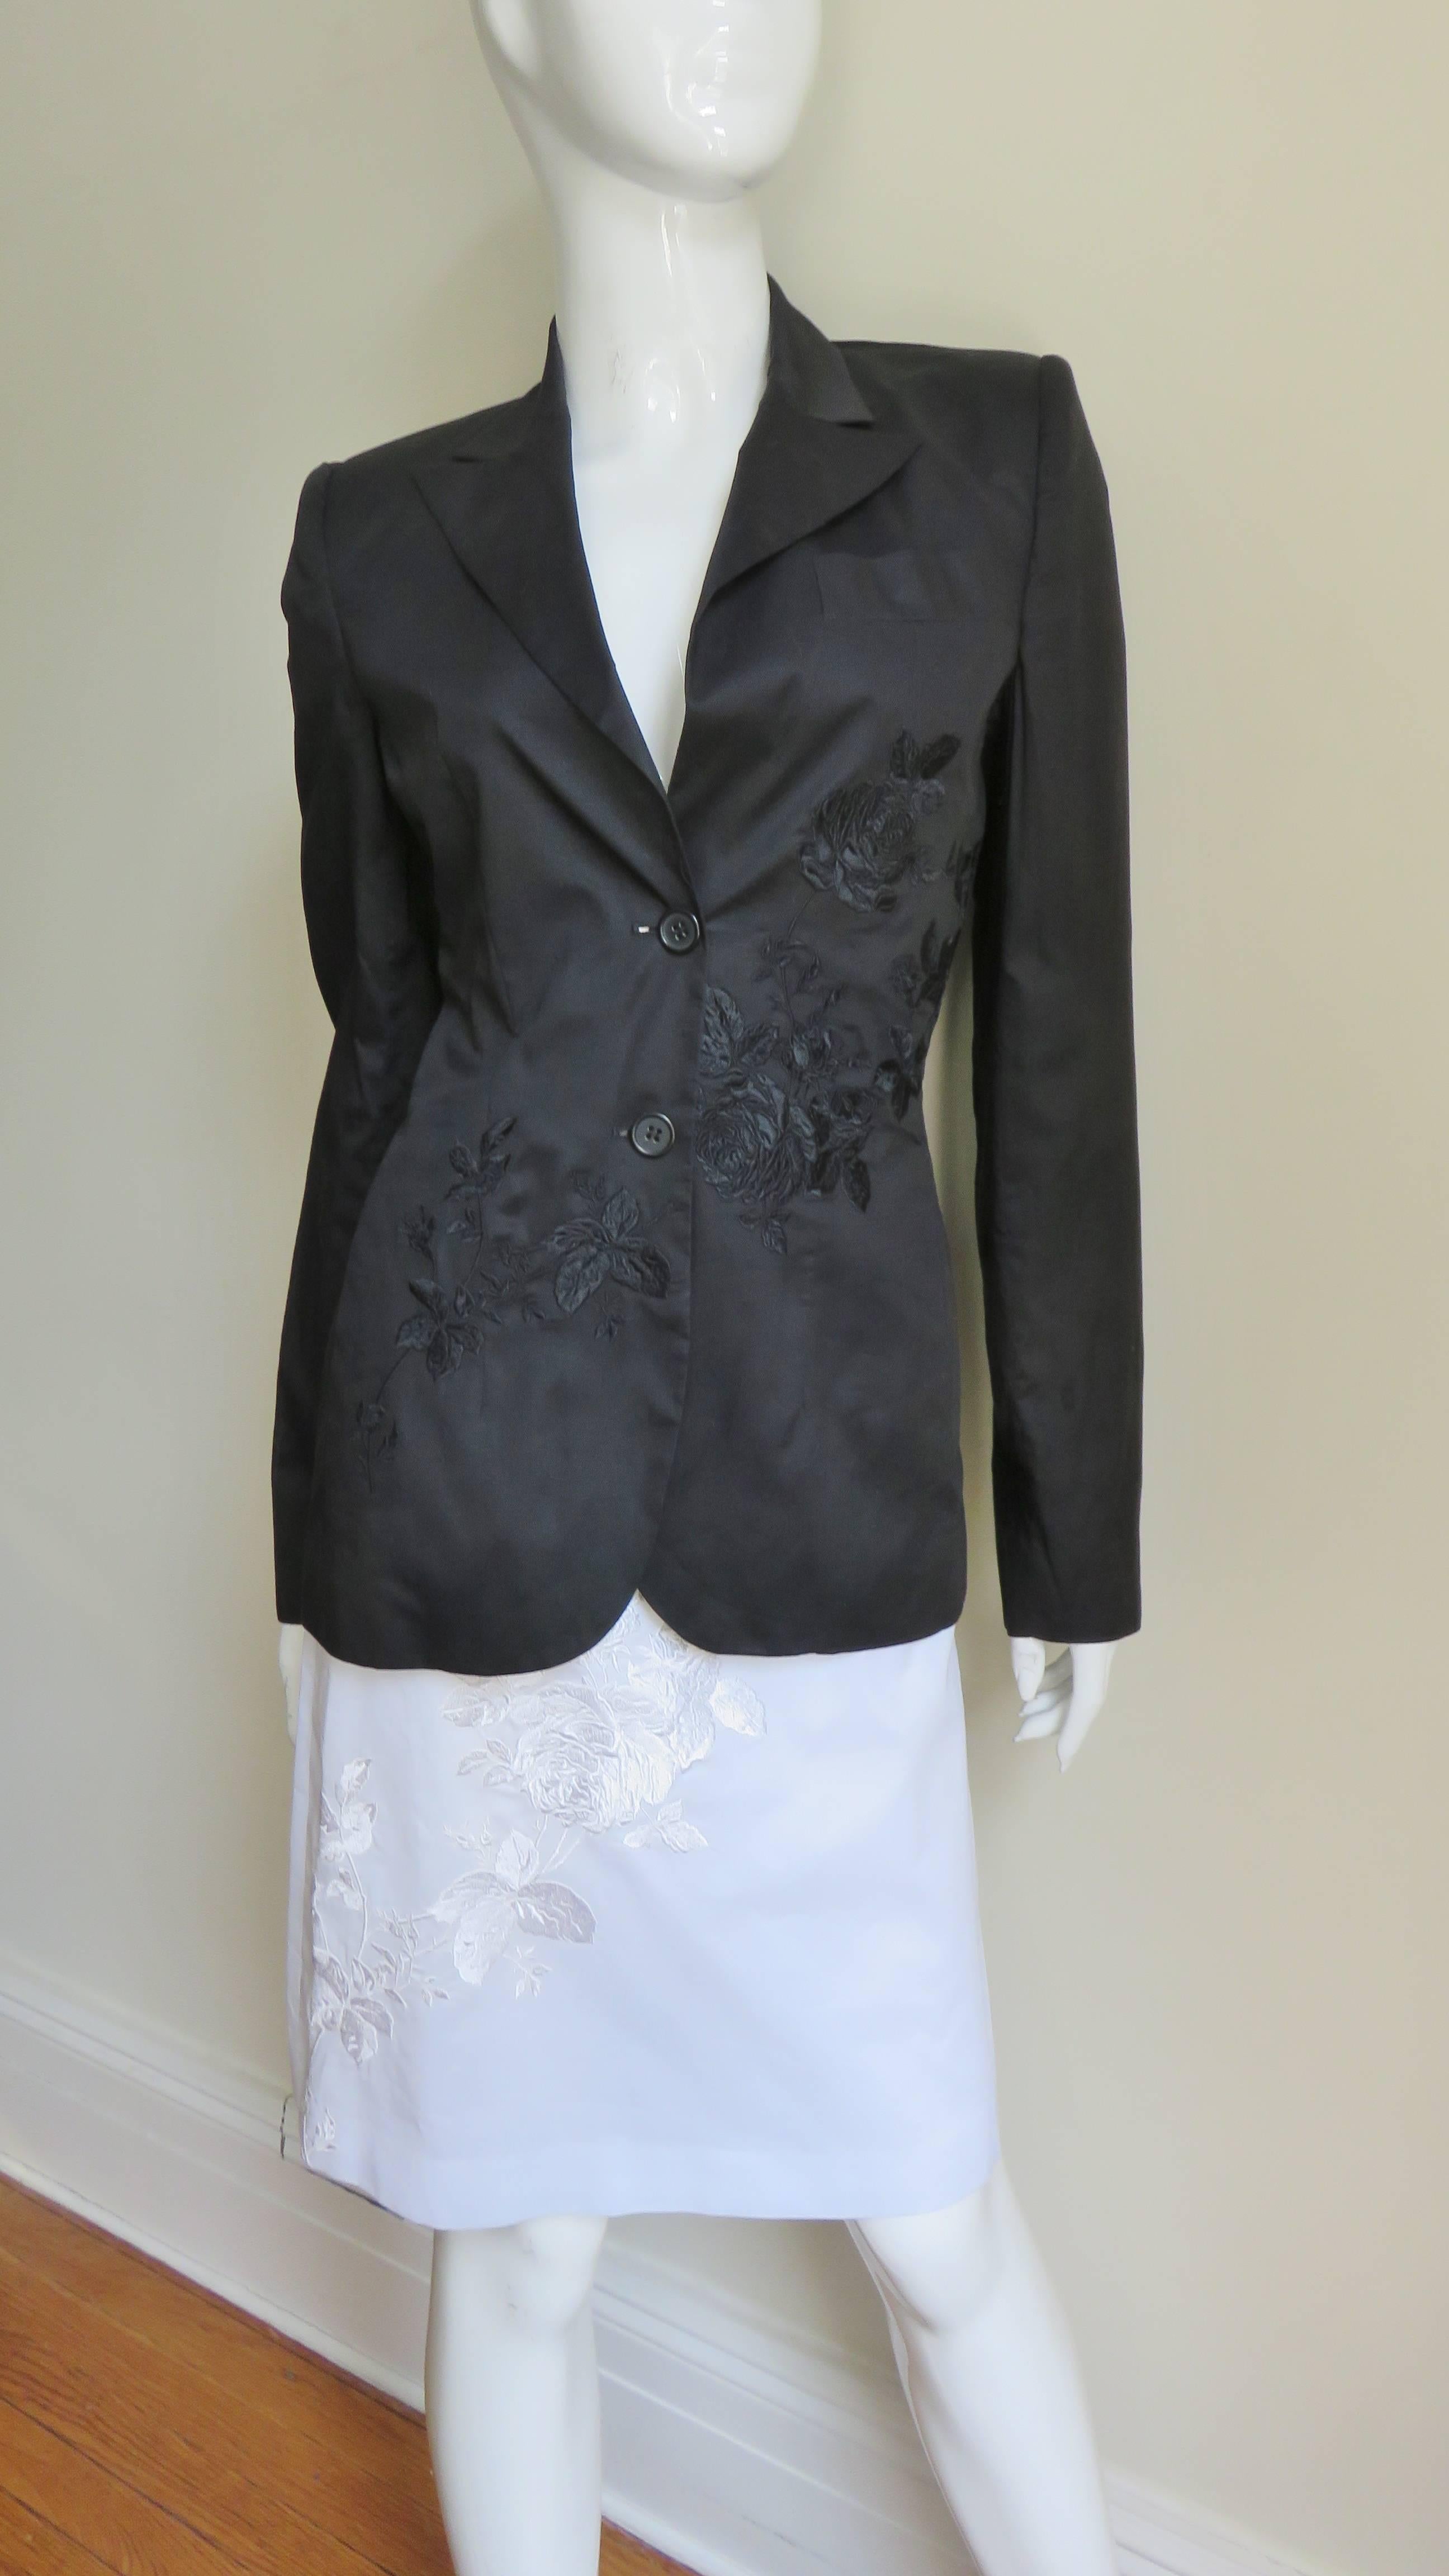 Un fabuleux tailleur jupe noir en soie/linen d'Alexander McQueen comprenant une jupe blanche assortie.  La veste est dotée de revers à pointe, d'une poche poitrine, d'un petit rembourrage aux épaules, de poches sur les coutures latérales et d'une